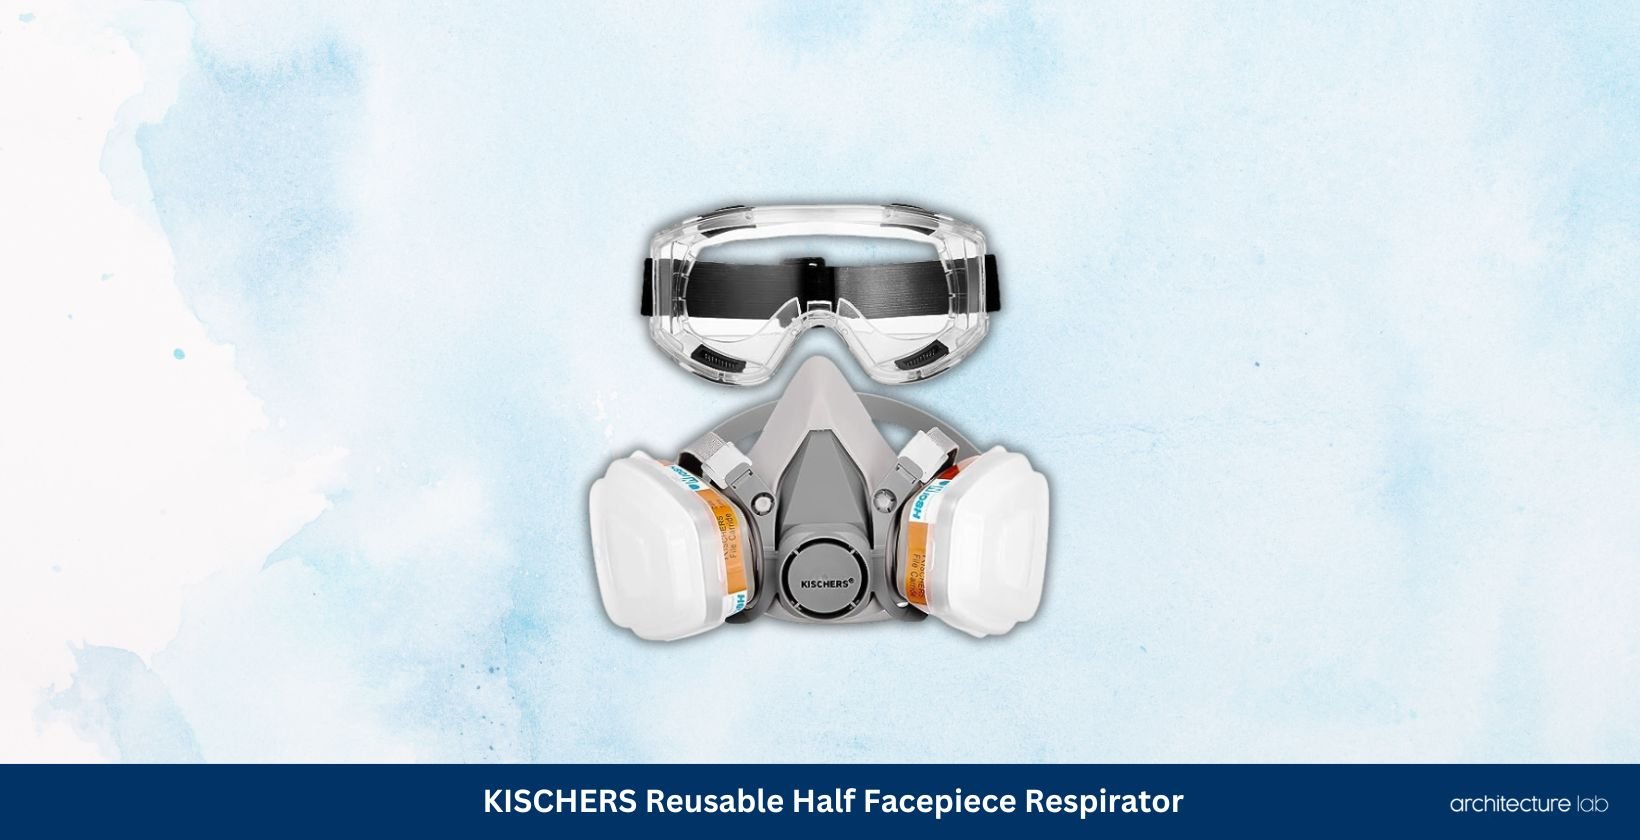 Kischers reusable half facepiece respirator